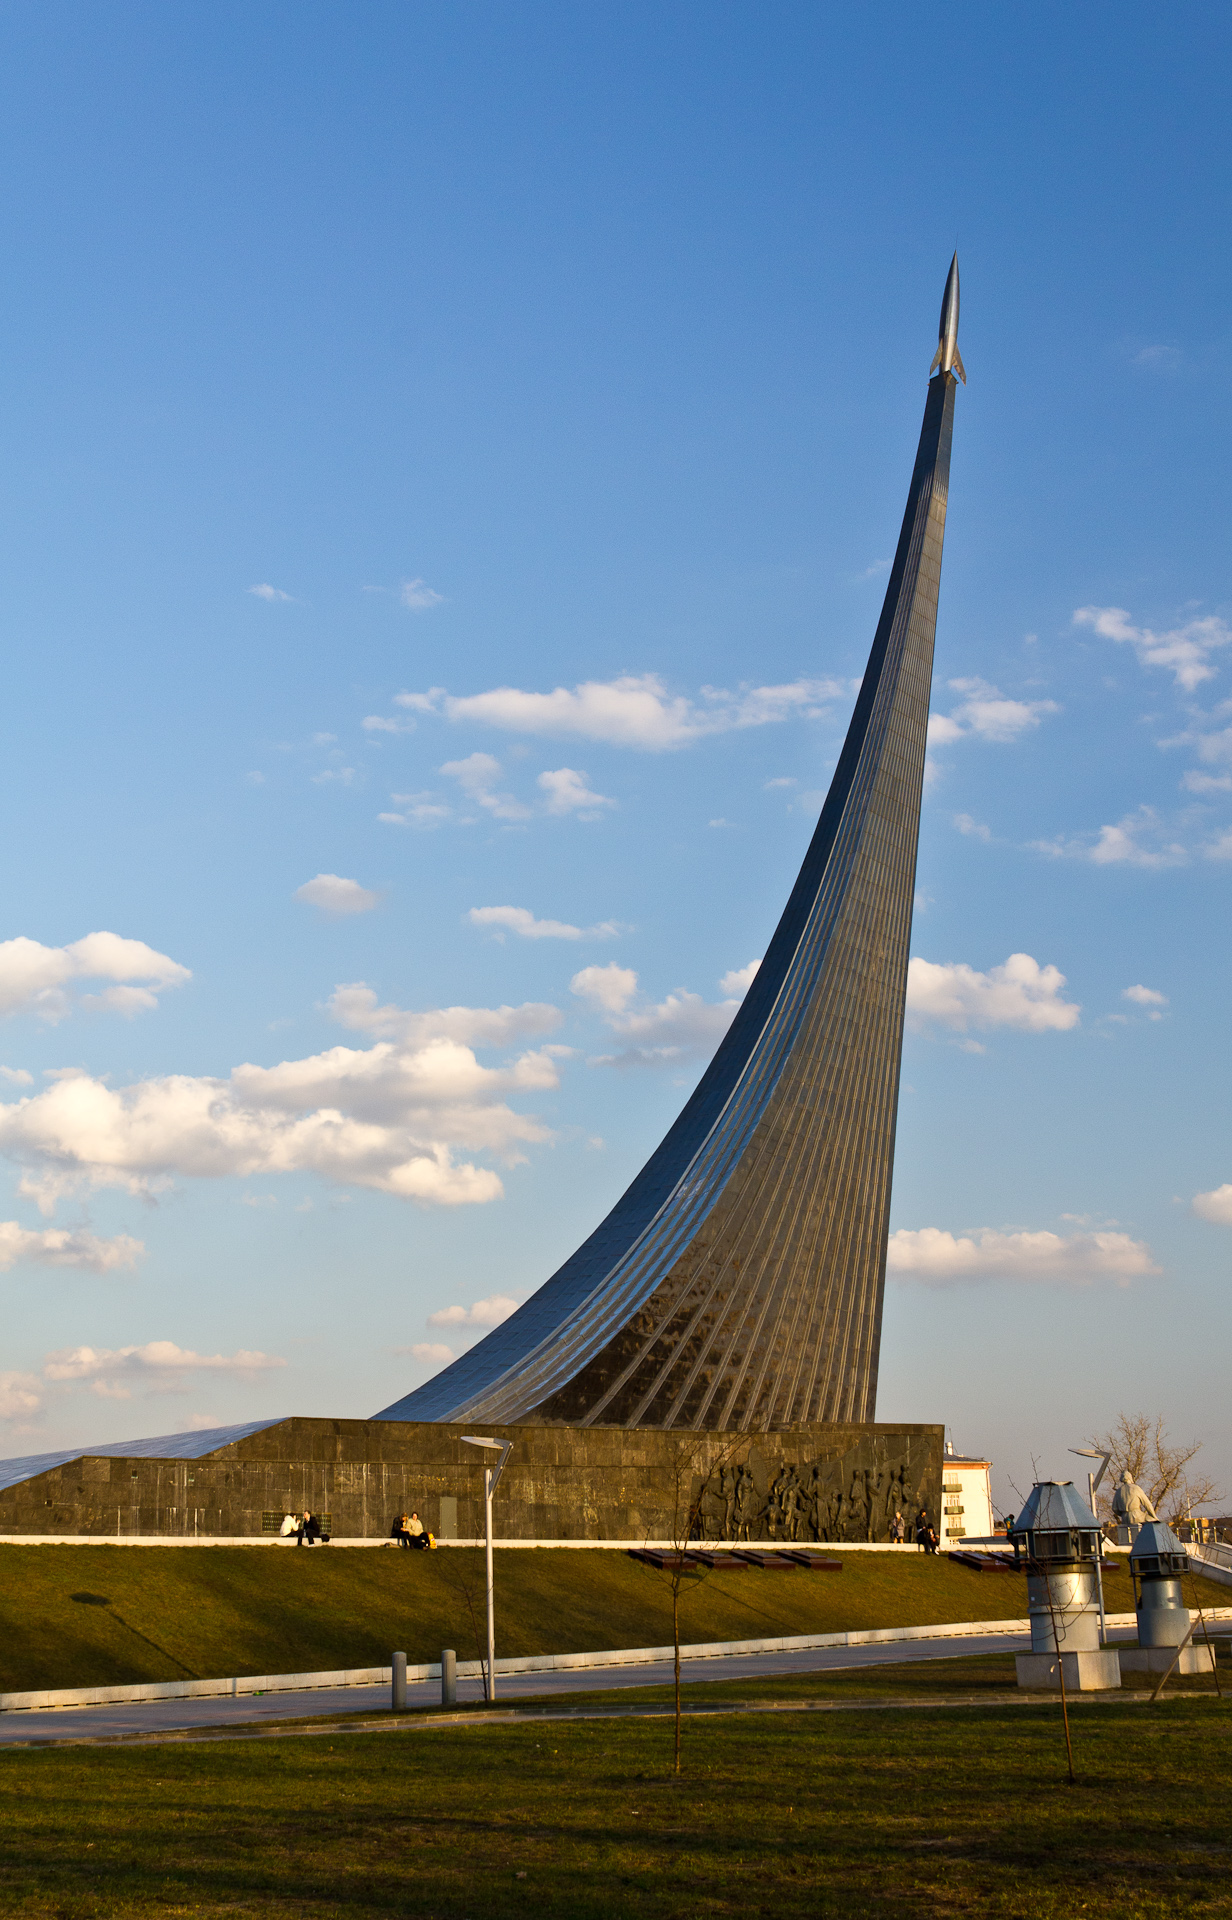 монумент покорителям космоса в москве